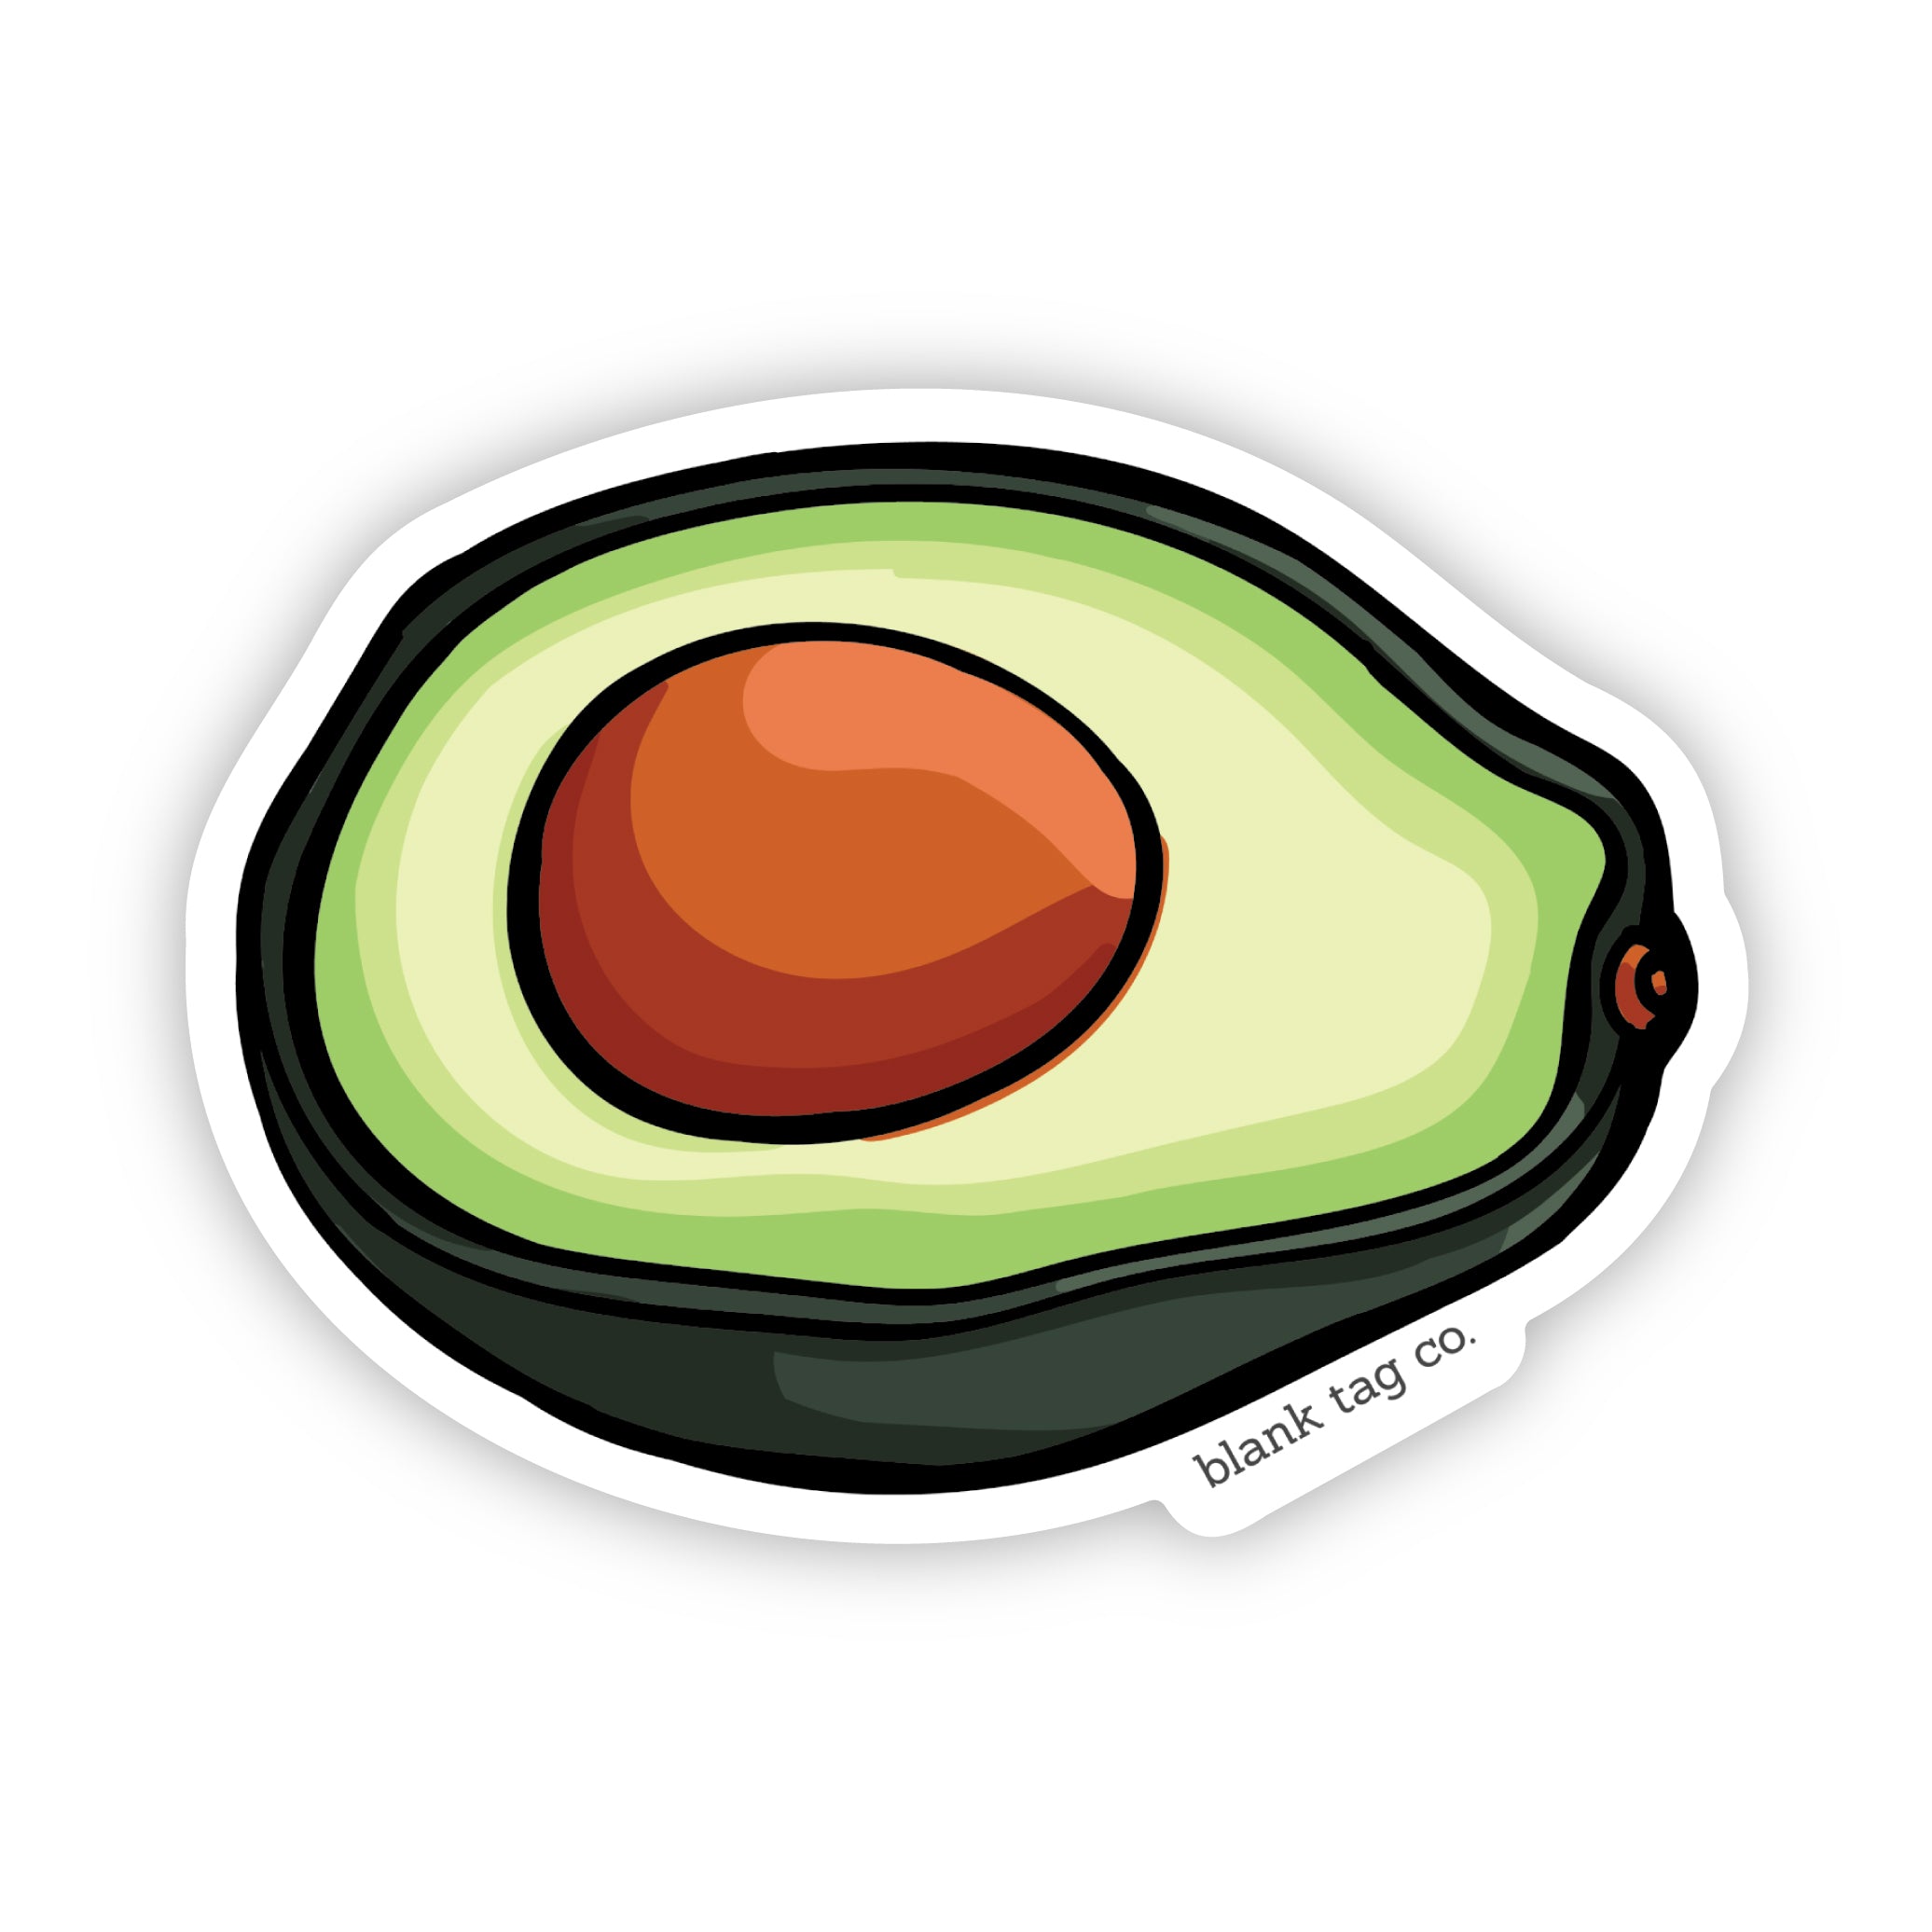 The Avocado Sticker